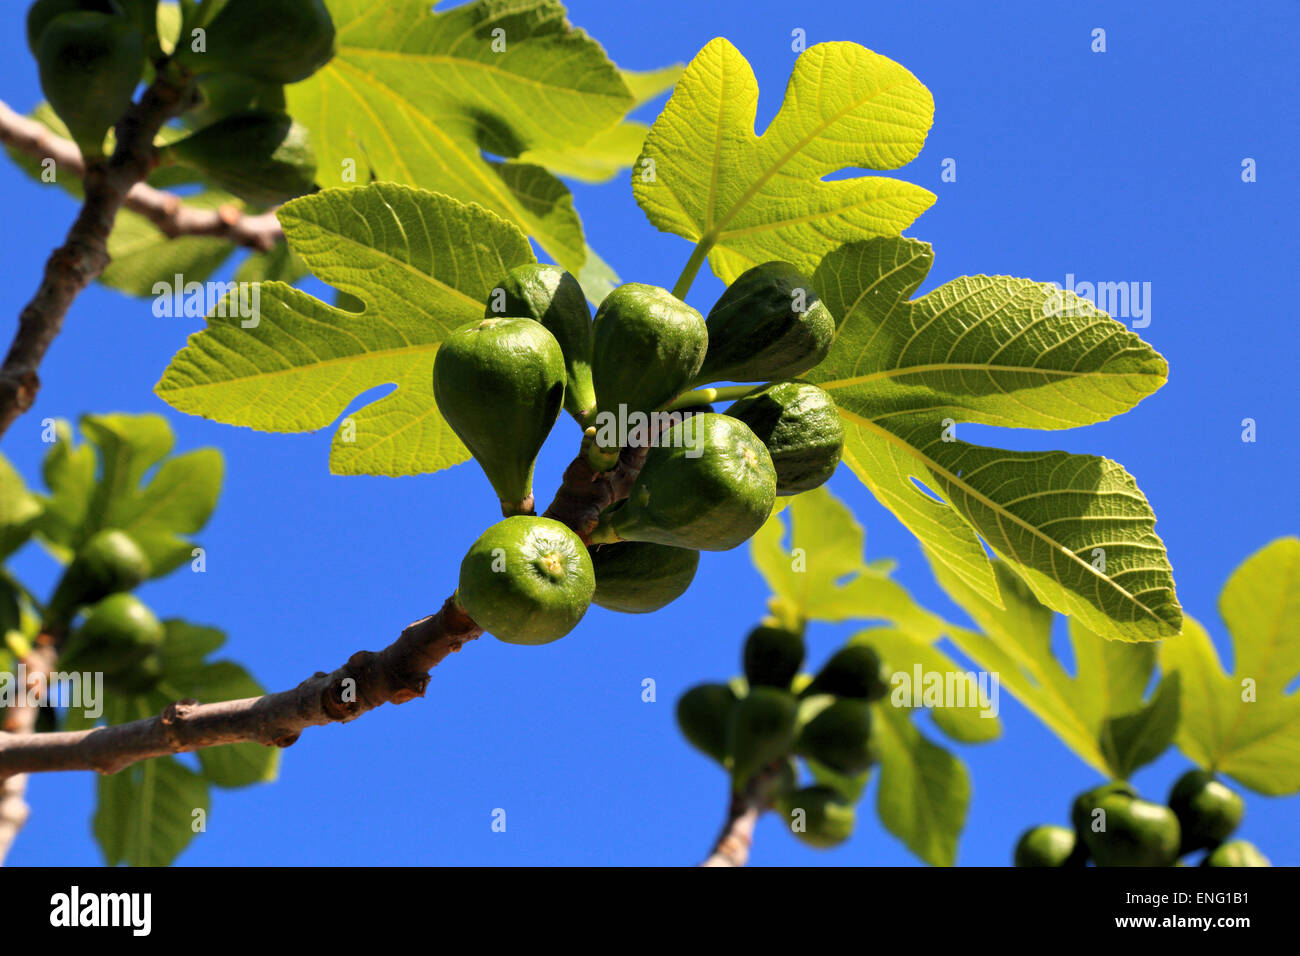 Figues (Ficus carica) arbre figuier Banque D'Images